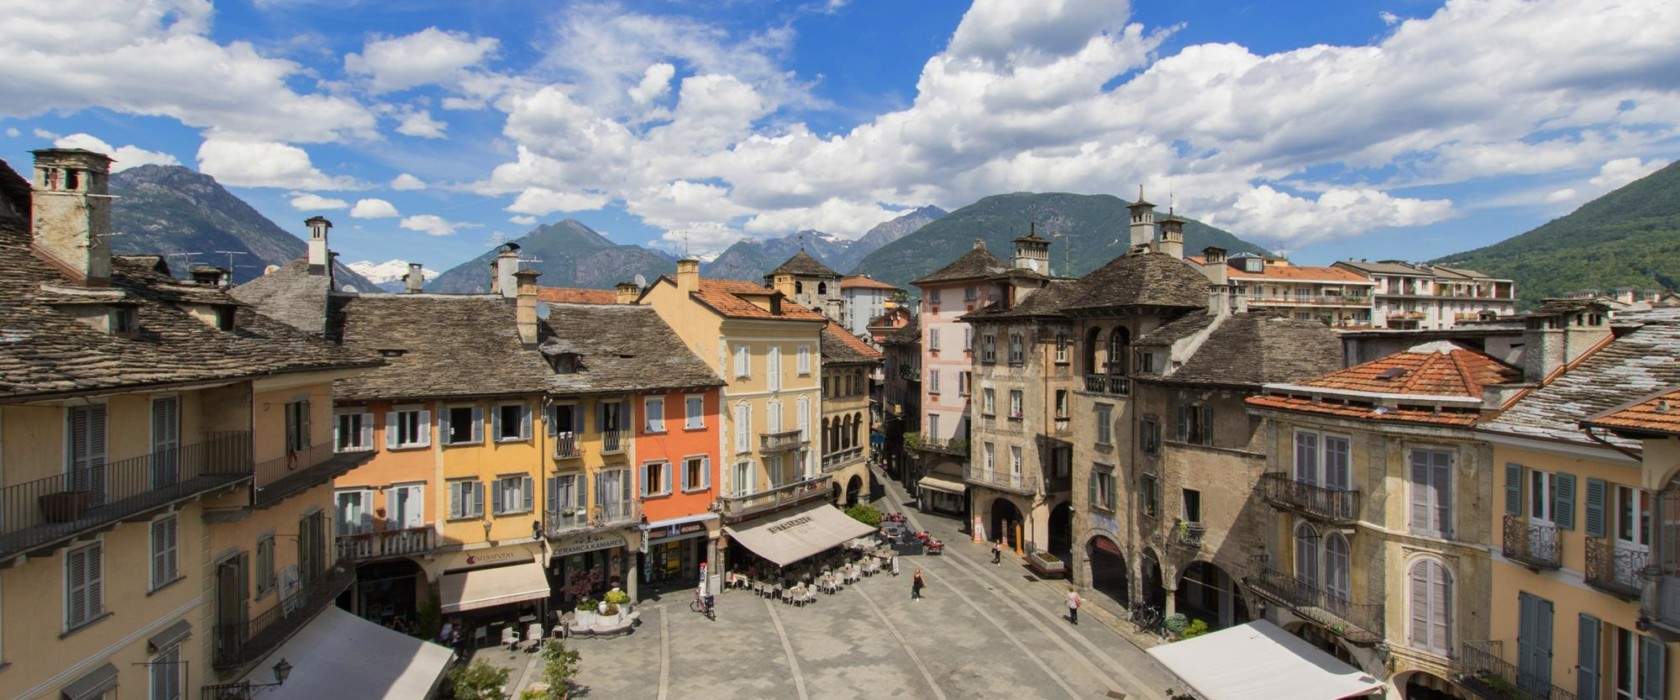 Val d'Ossola, que voir : 10 lieux à ne pas manquer